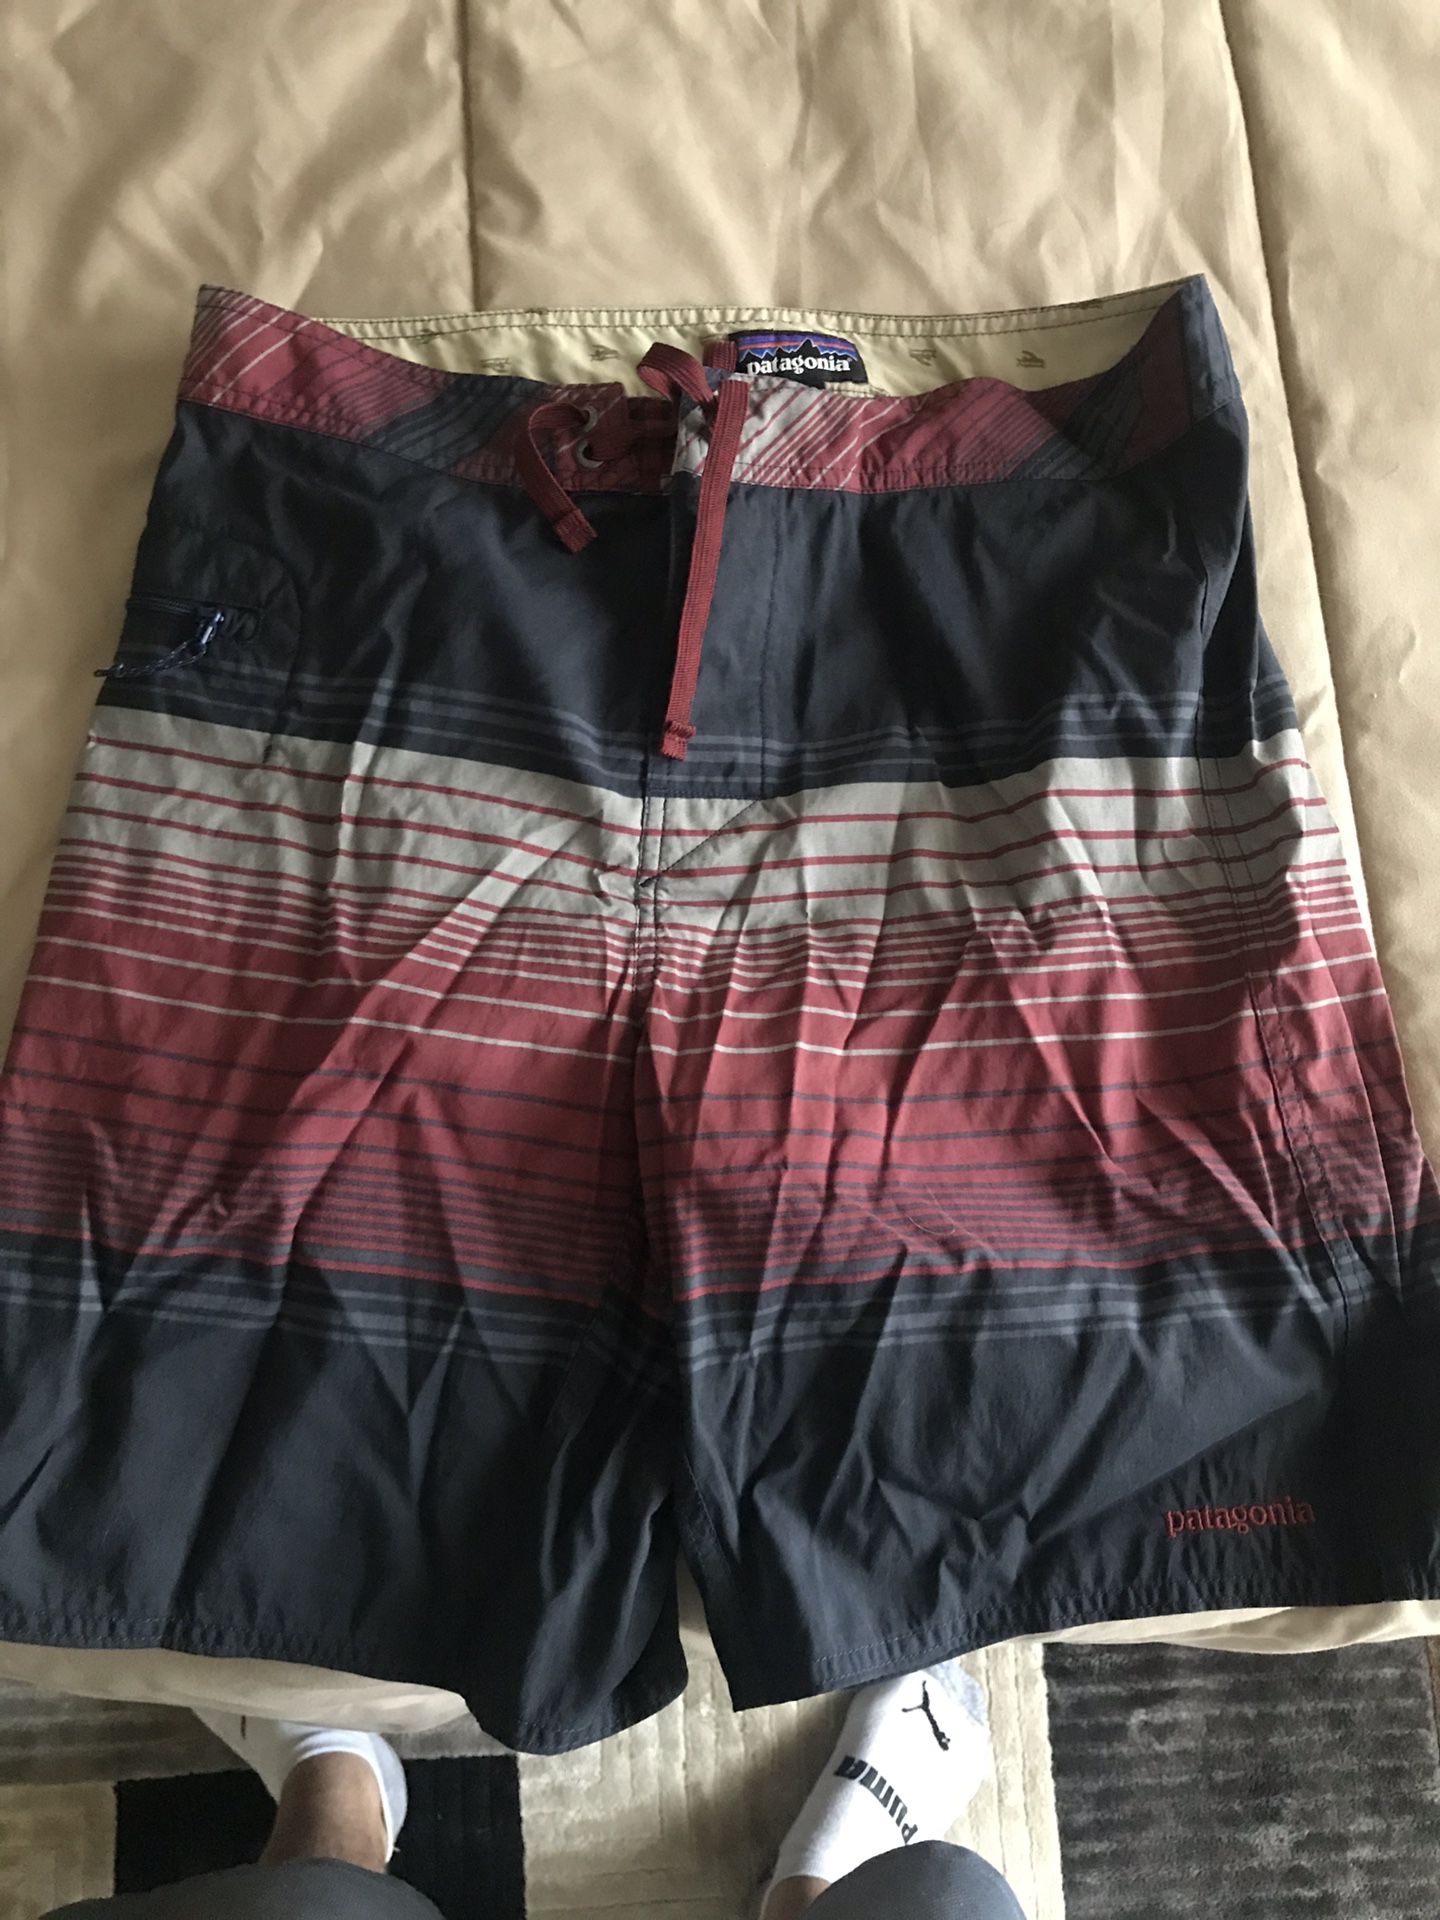 Patagonia board shorts